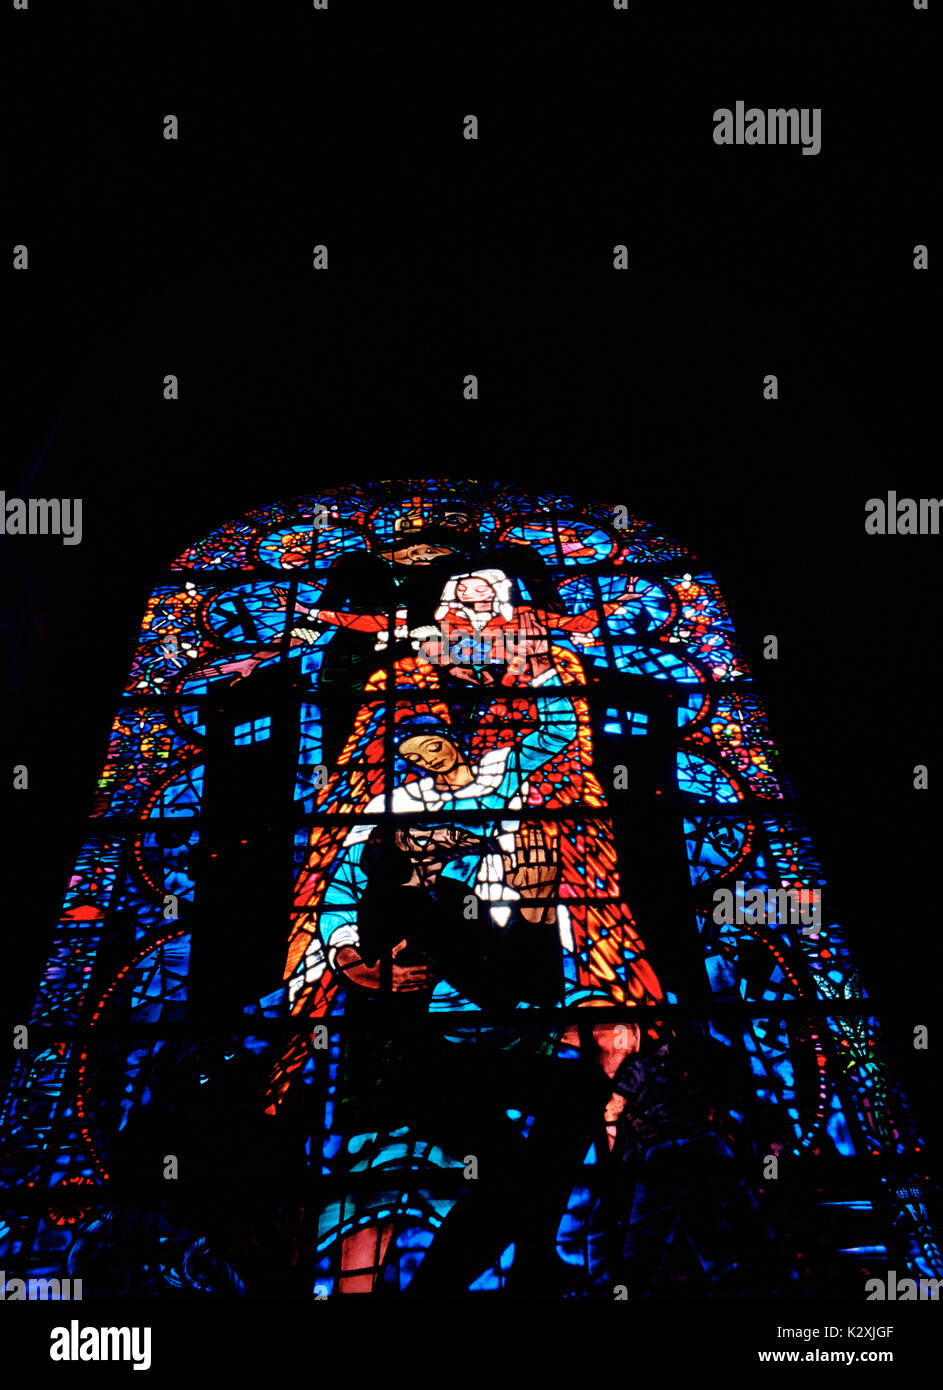 Finestra di salvezza da bossanyi nella cattedrale di Canterbury nella città di Canterbury nel Kent in Inghilterra in Gran Bretagna nel Regno Unito. il vetro macchiato Foto Stock